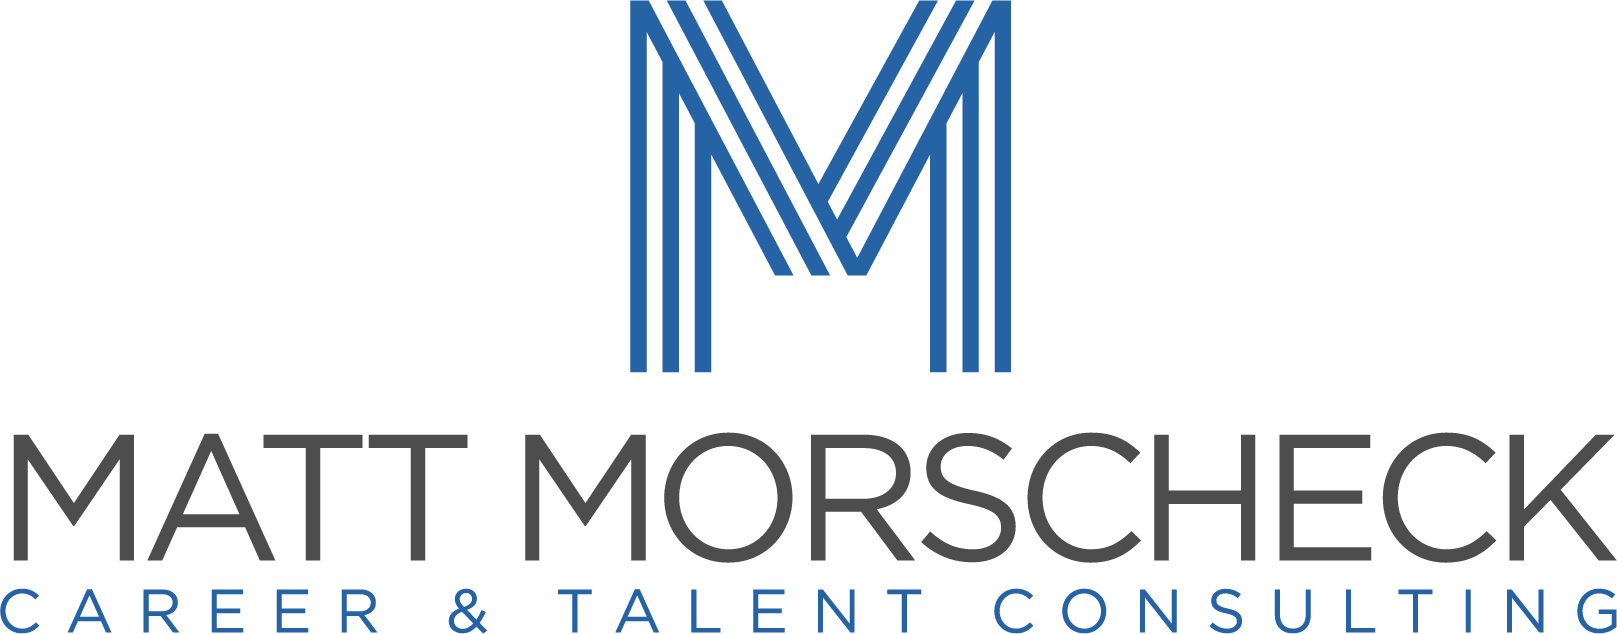 Matt Morscheck Career & Talent Consulting